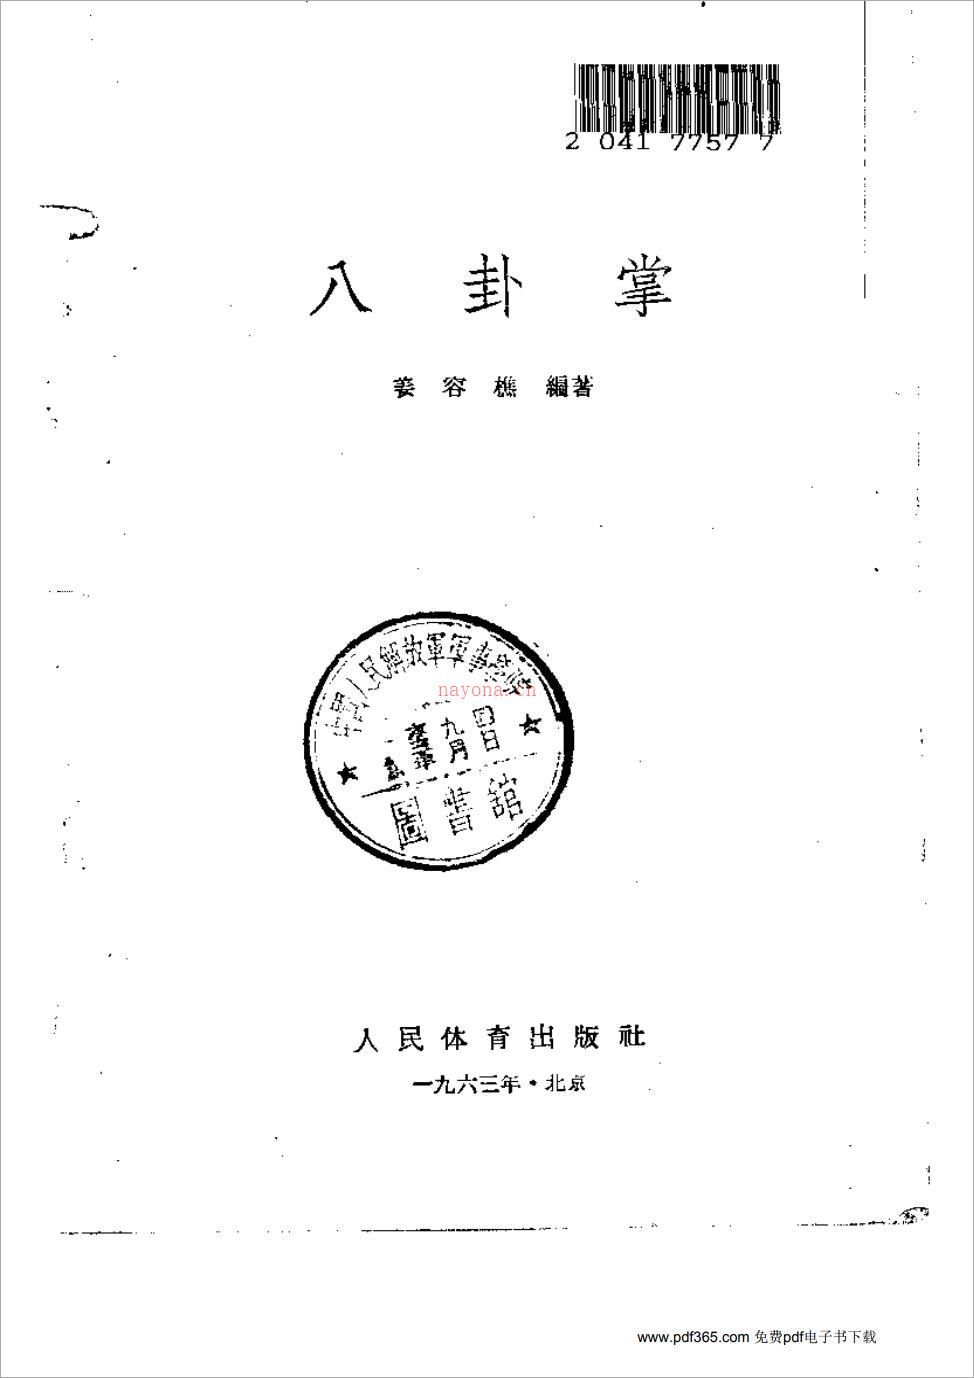 姜容樵-八卦掌153页.pdf 百度网盘资源